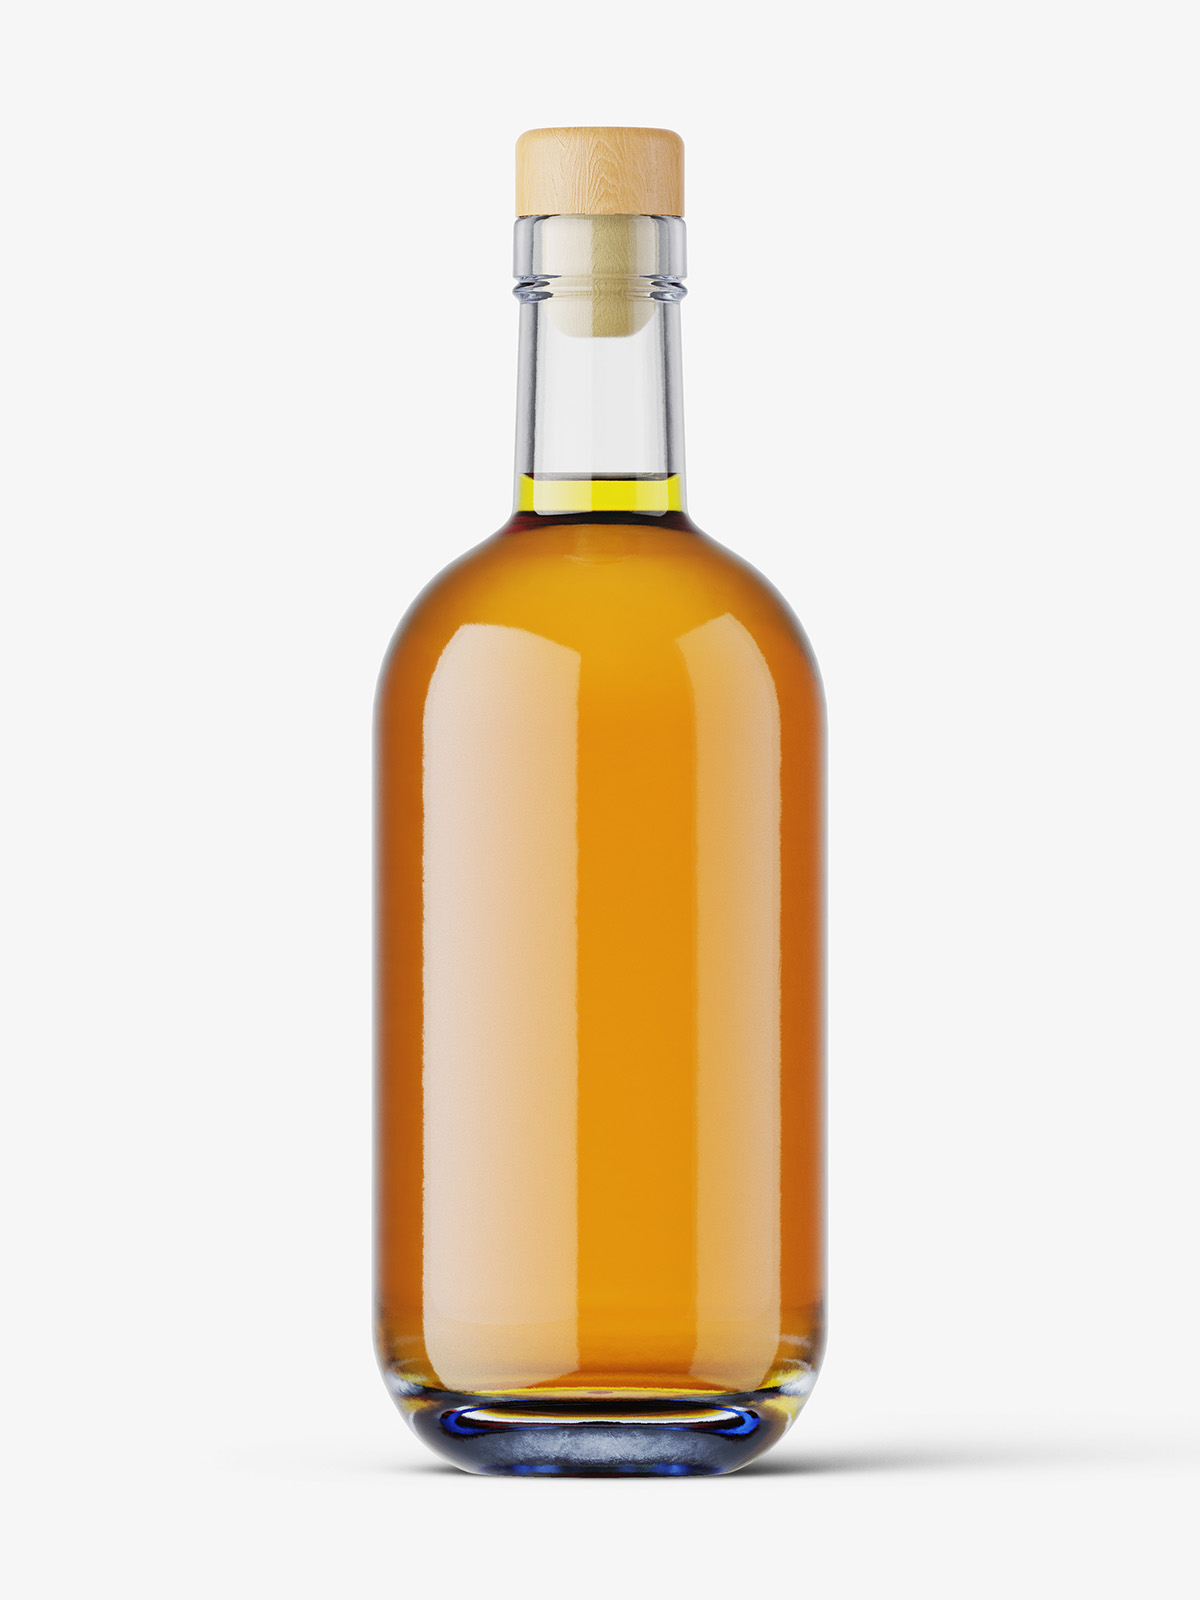 Download Whisky bottle mockup - Smarty Mockups